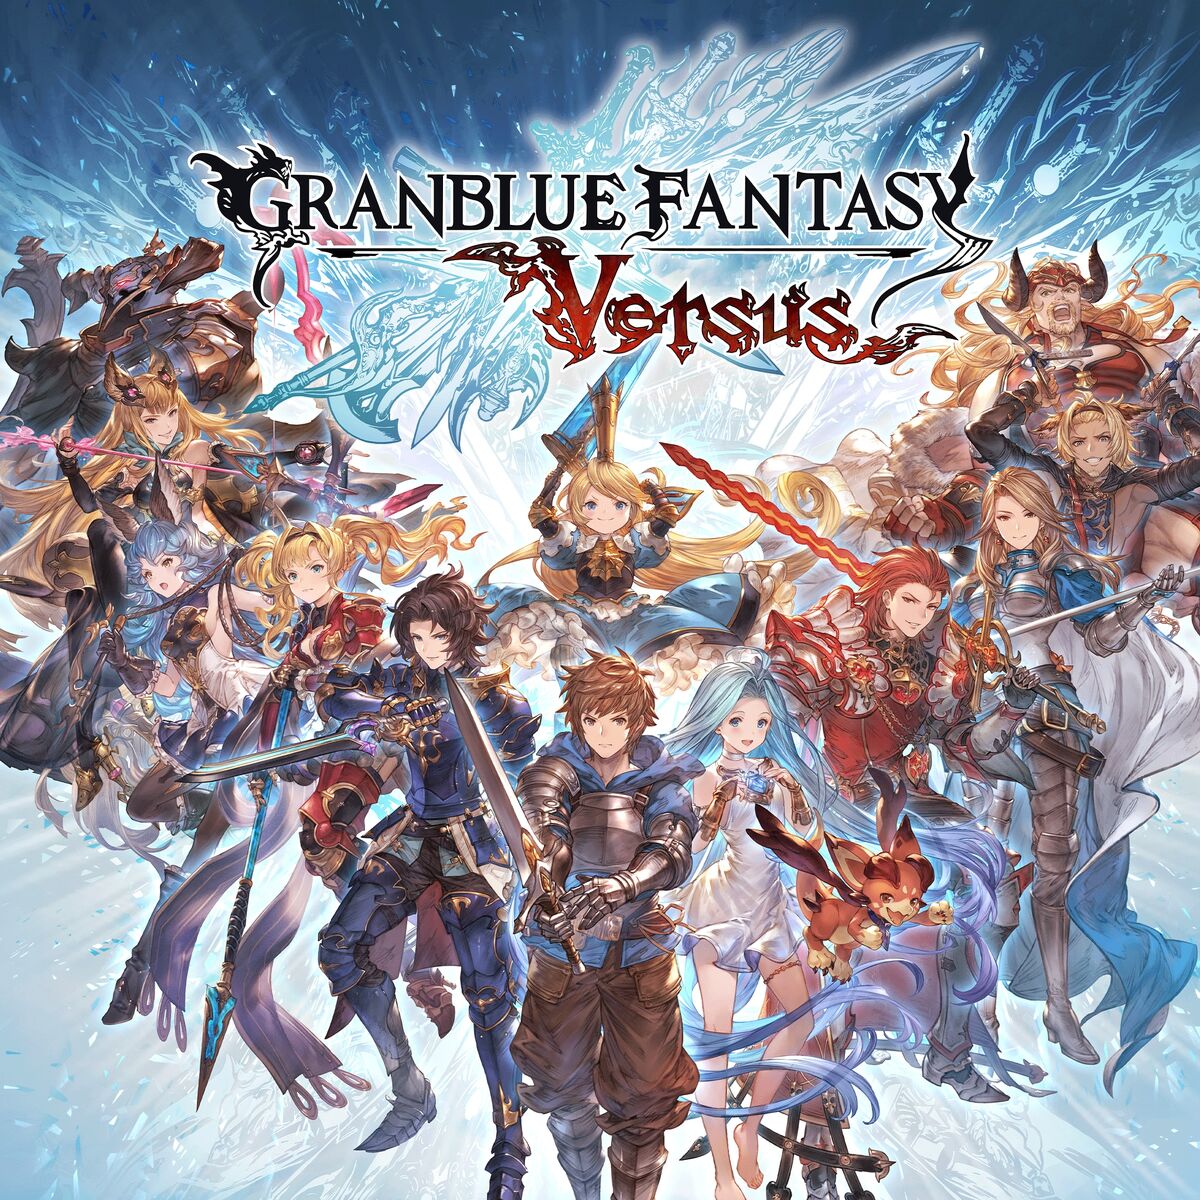 Granblue Fantasy - Wikipedia